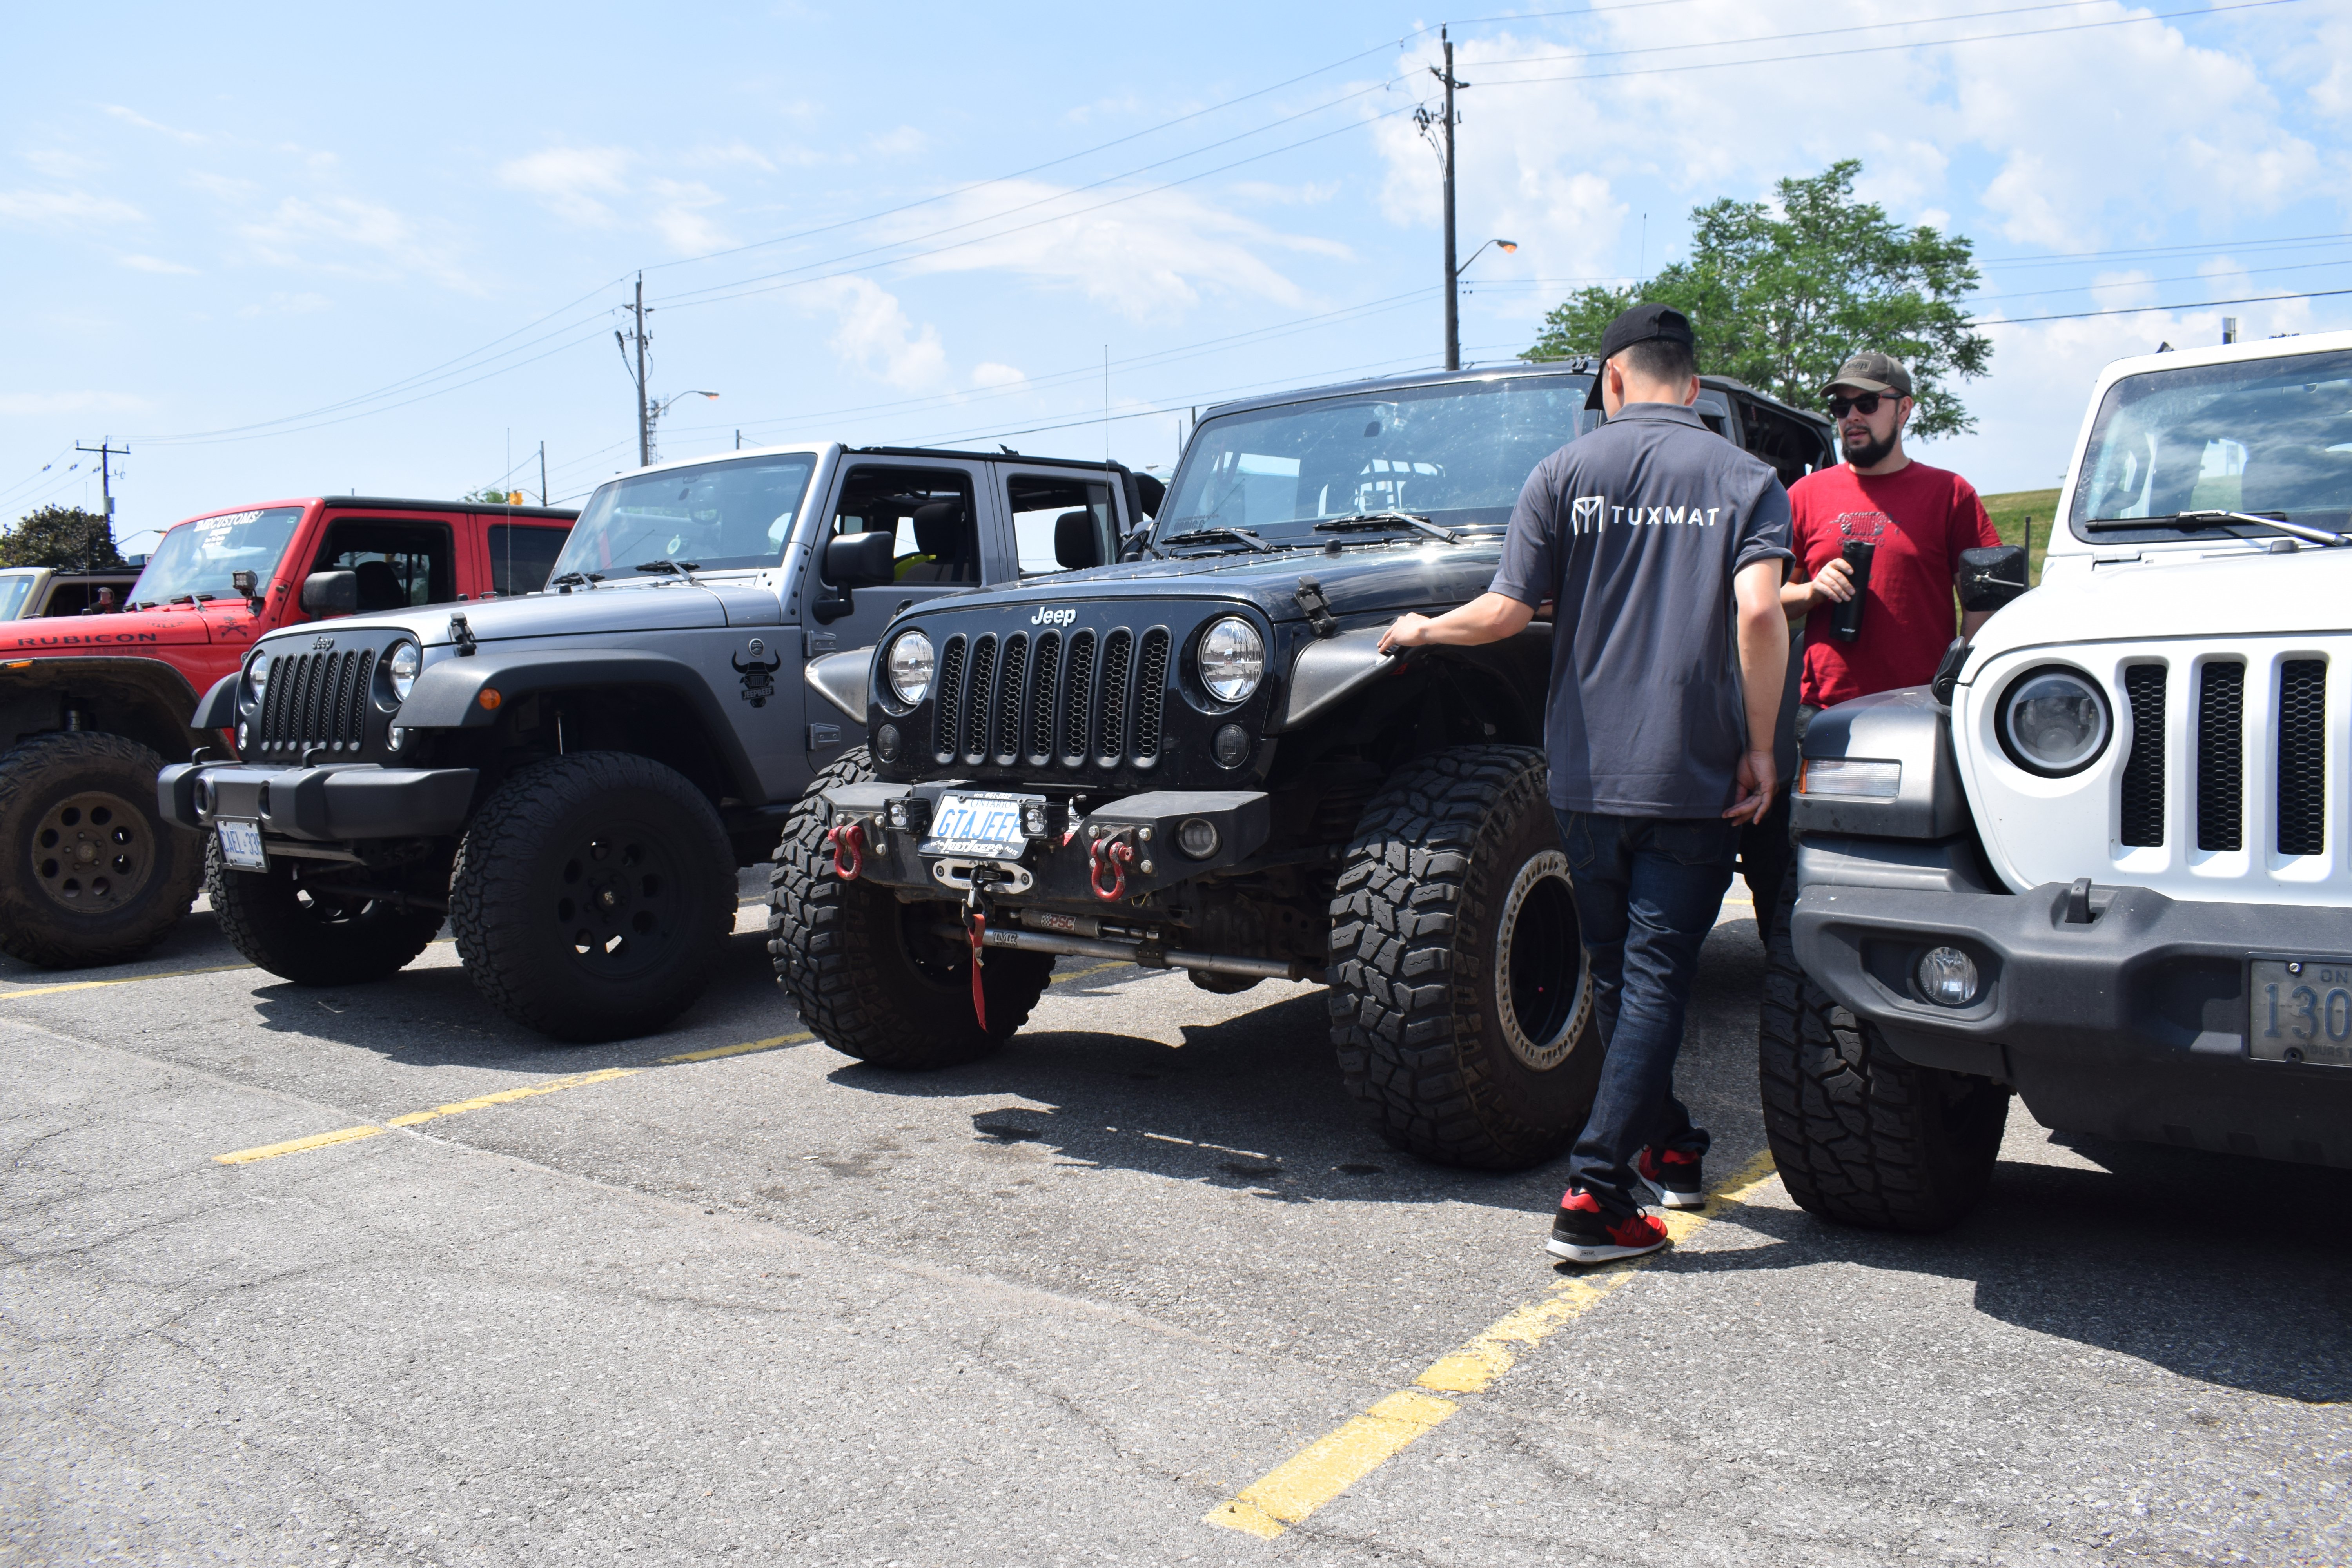 Jeeps in a parking lot